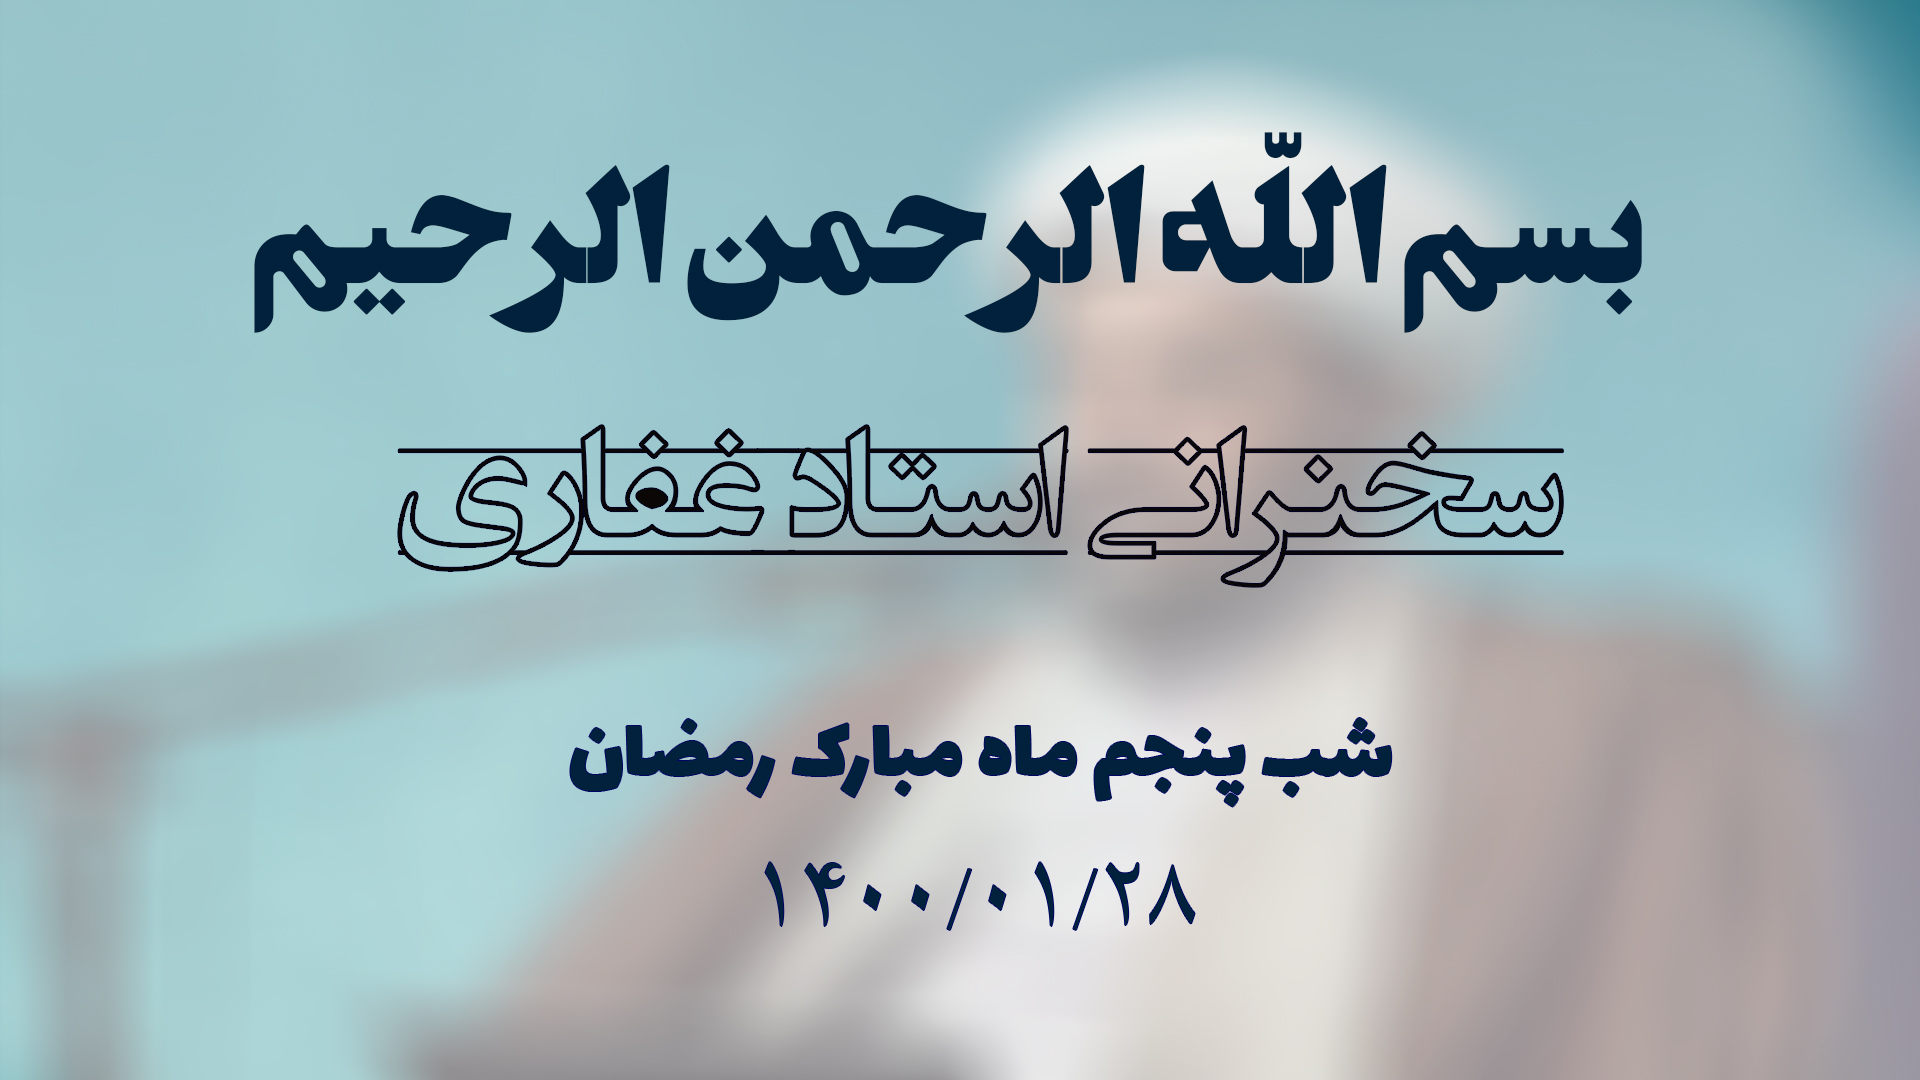 سخنرانی استاد غفاری ، شب پنجم ماه مبارک رمضان  1400/01/28